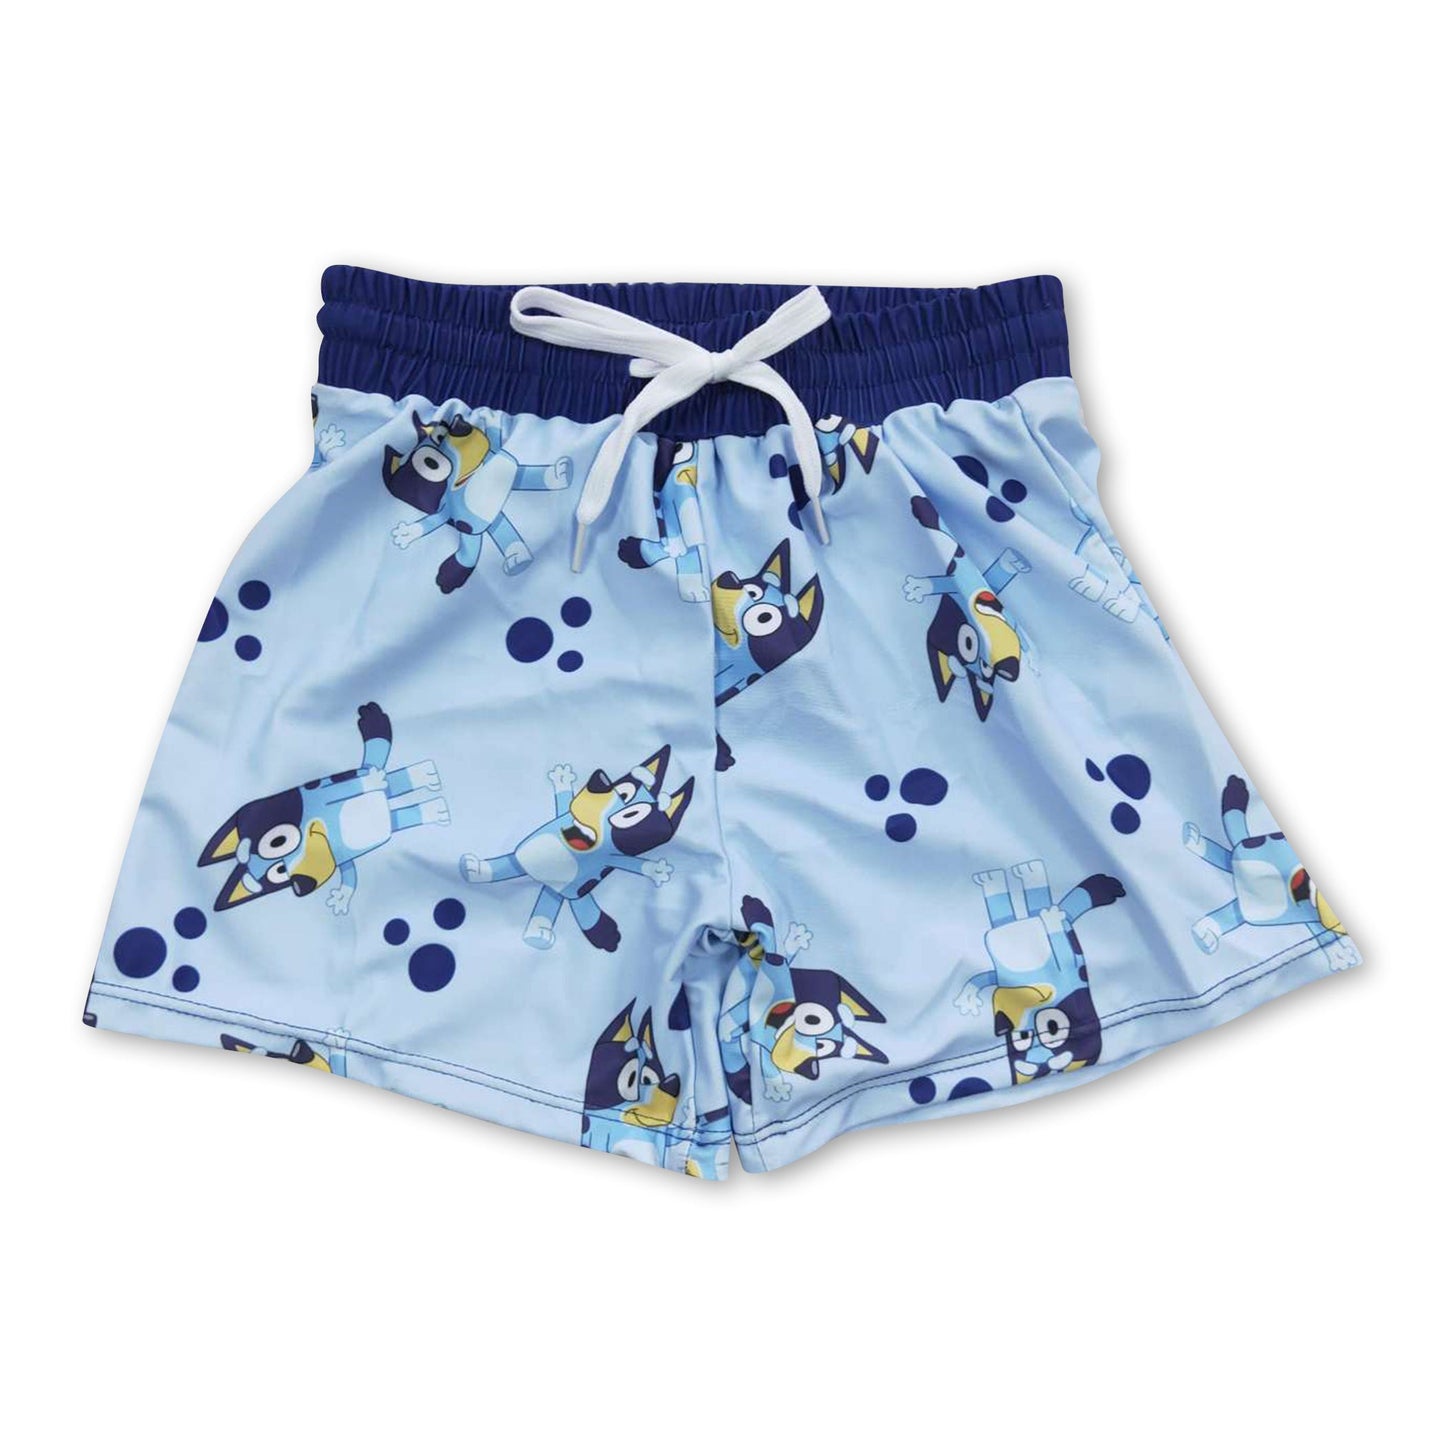 Blue dogs cute kids boy summer swim trunks